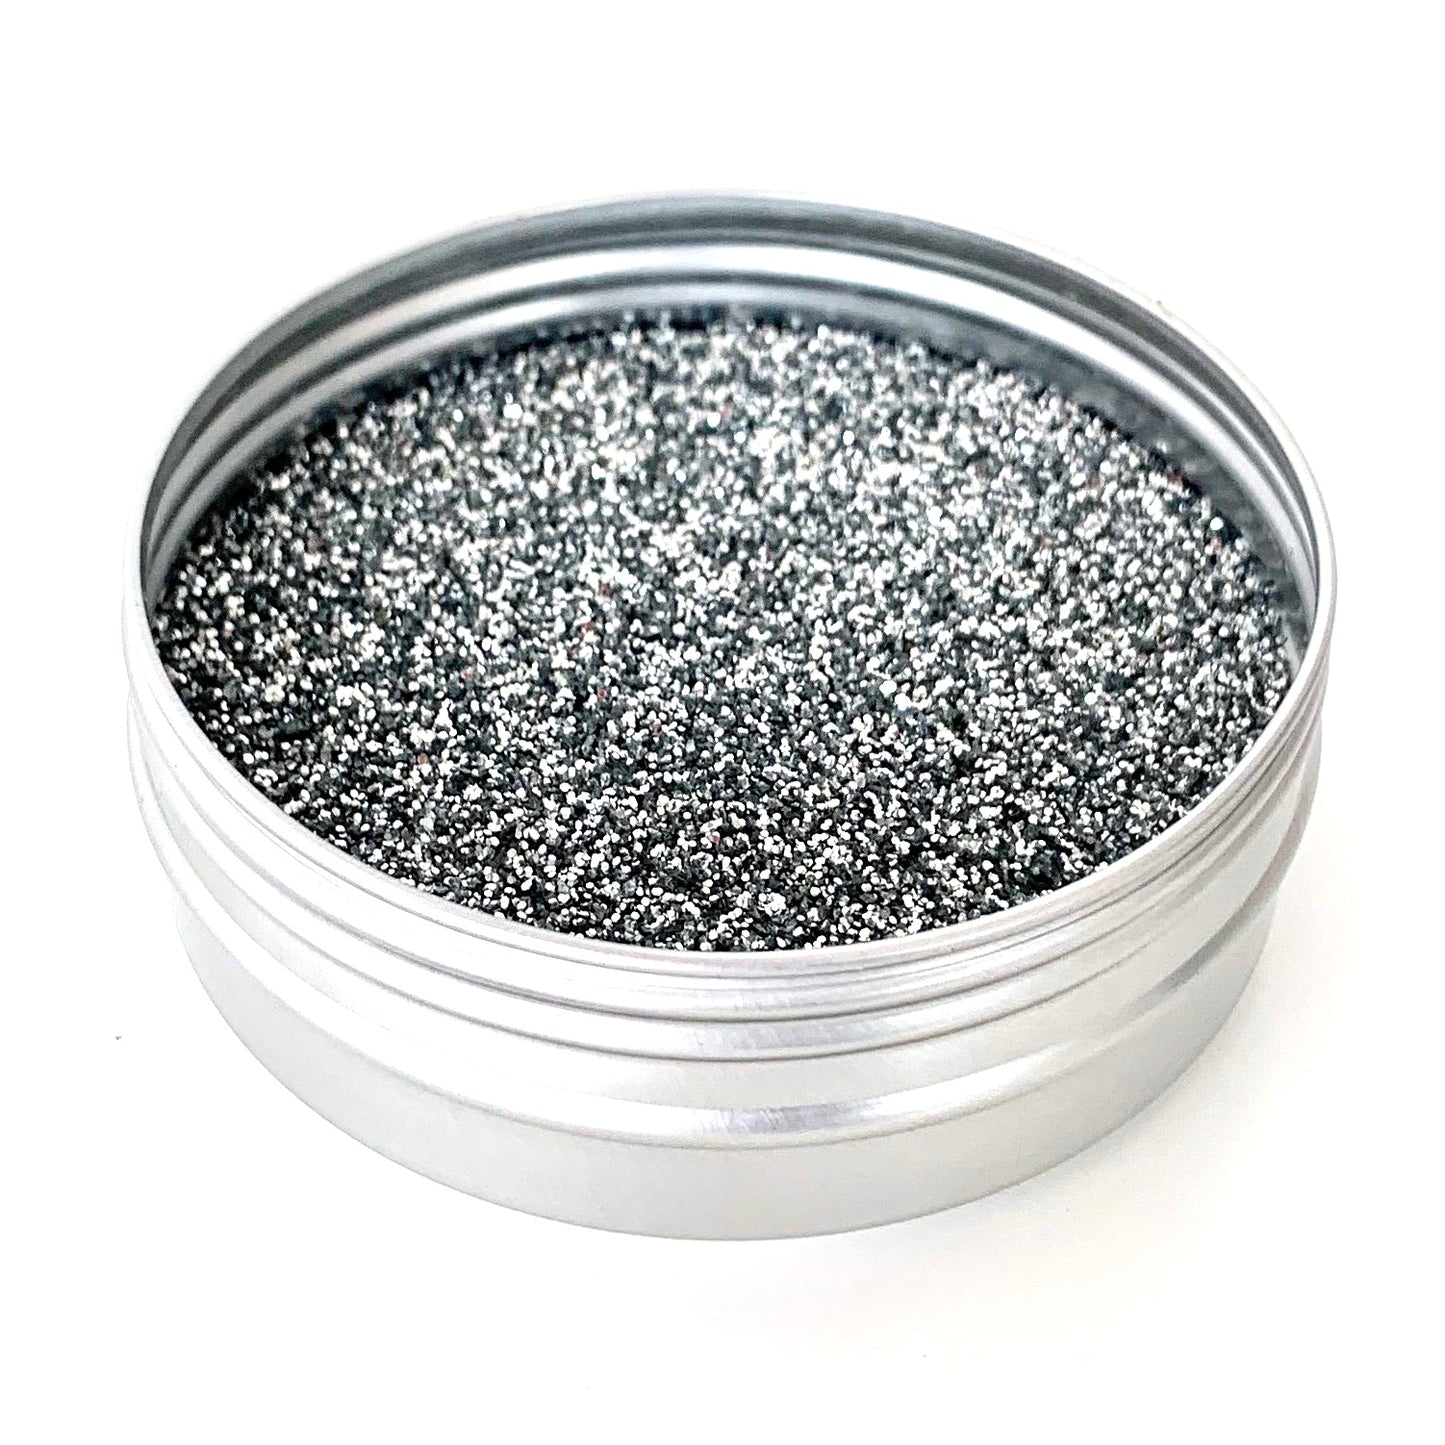 Silver Fine Biodegradable Glitter